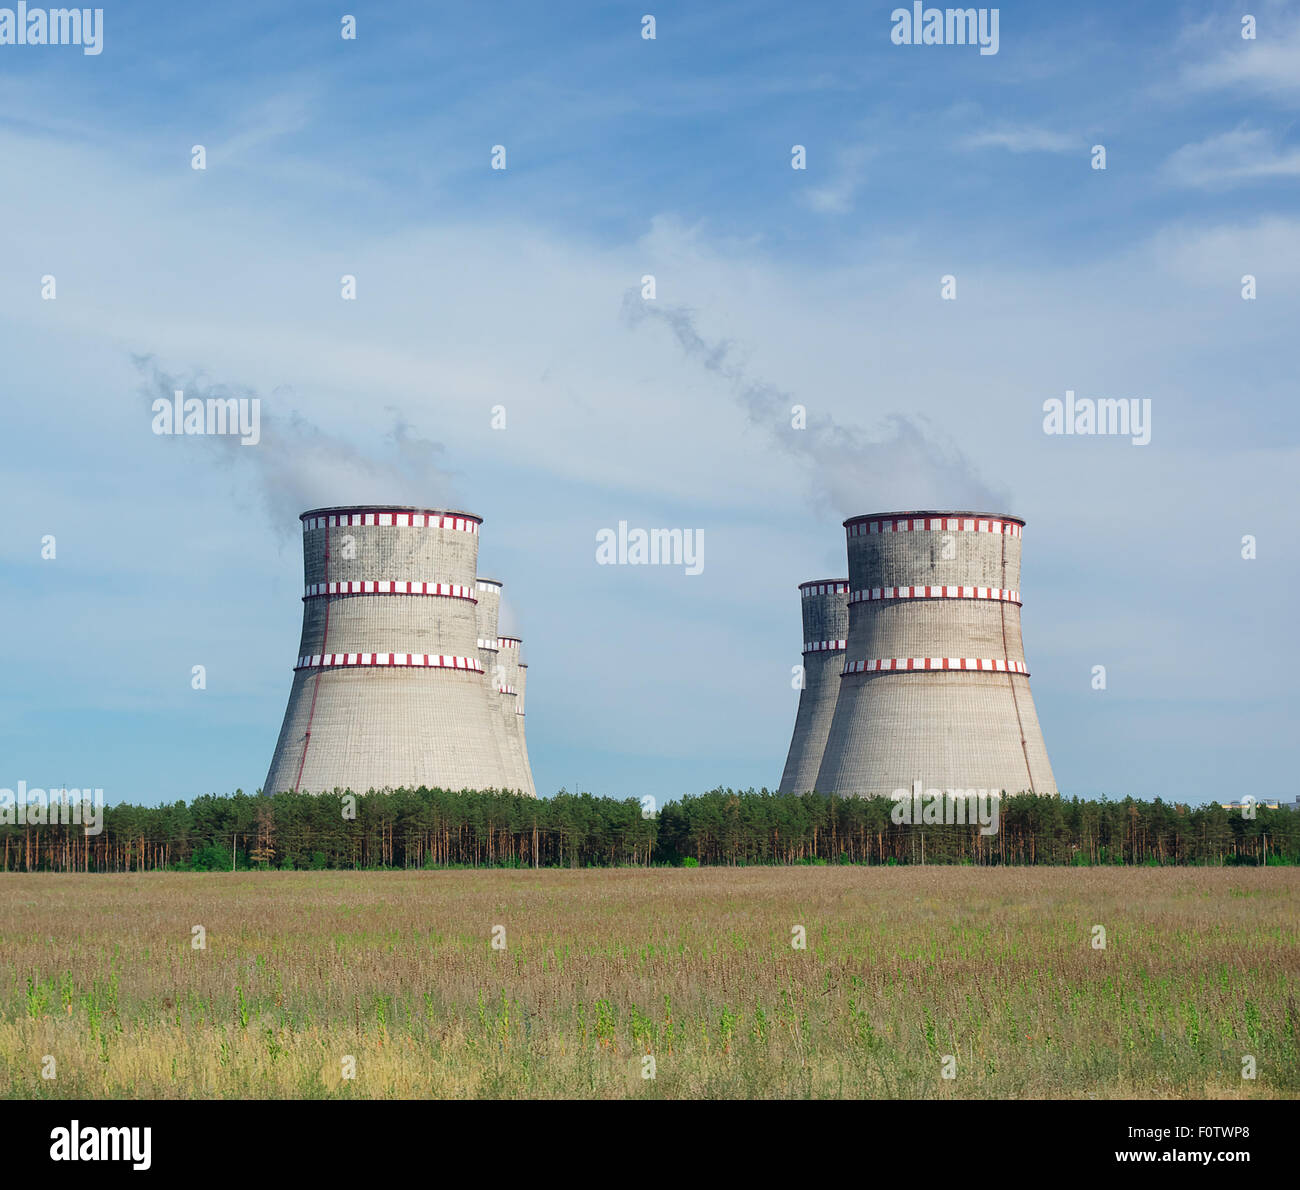 Un impianto ad energia nucleare. Industria energetica. Foto Stock